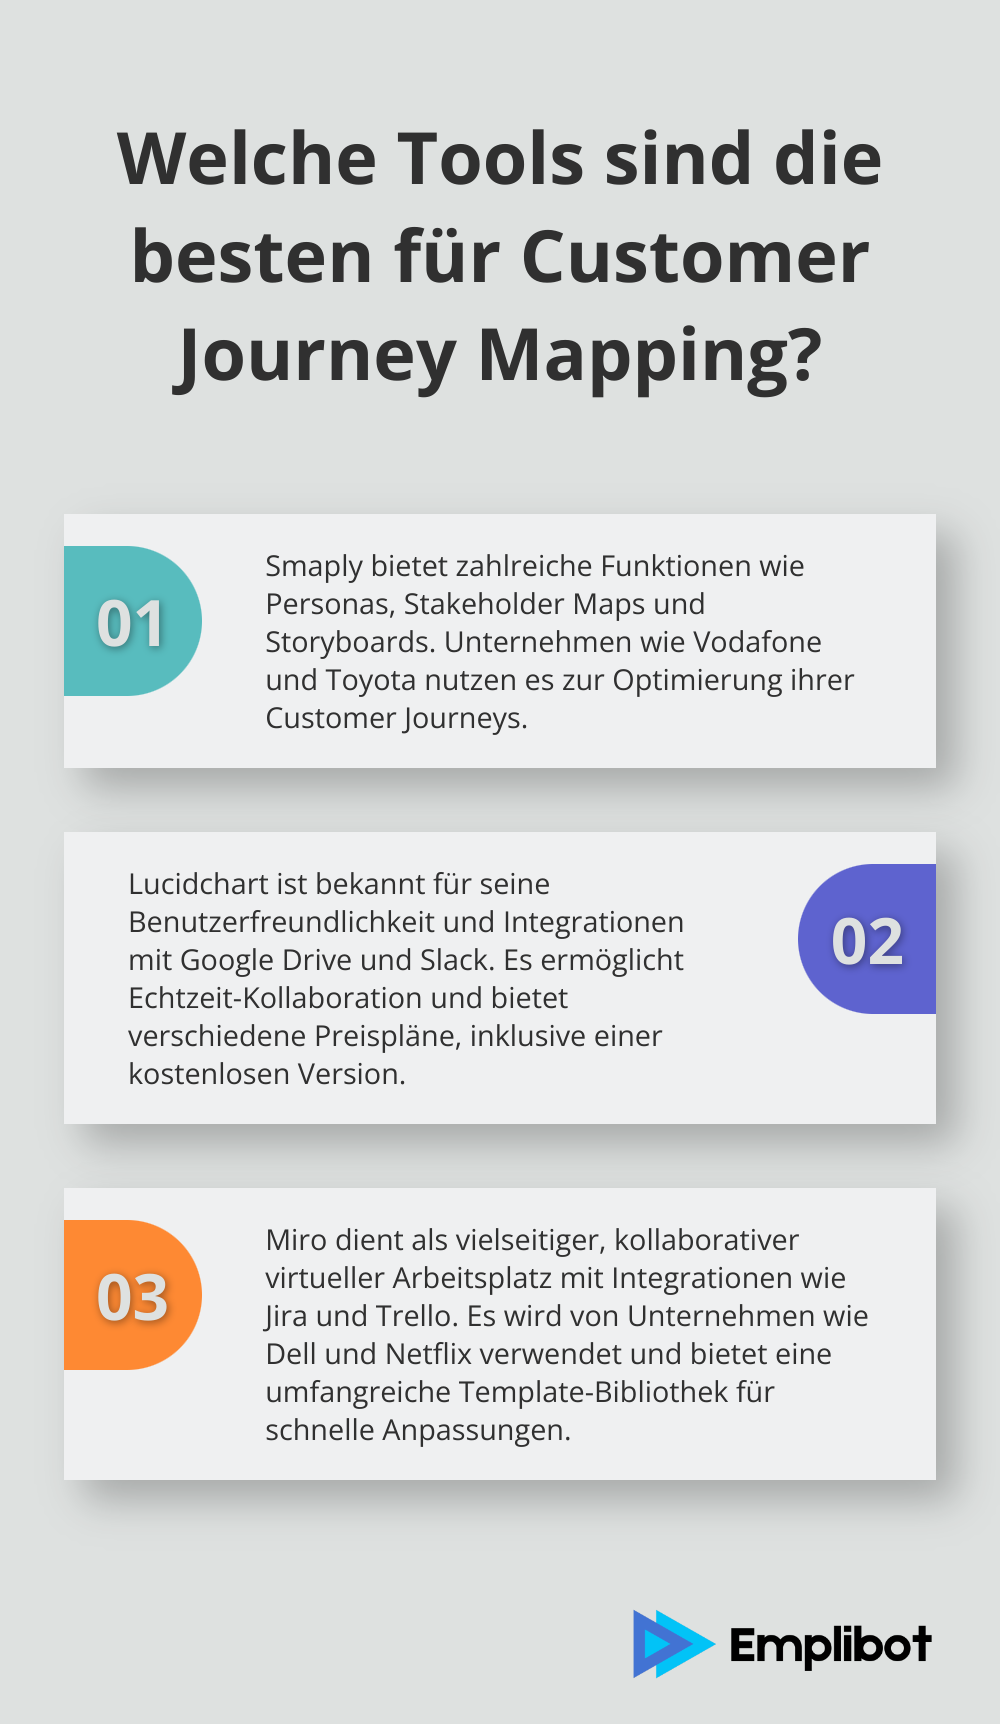 Fact - Welche Tools sind die besten für Customer Journey Mapping?